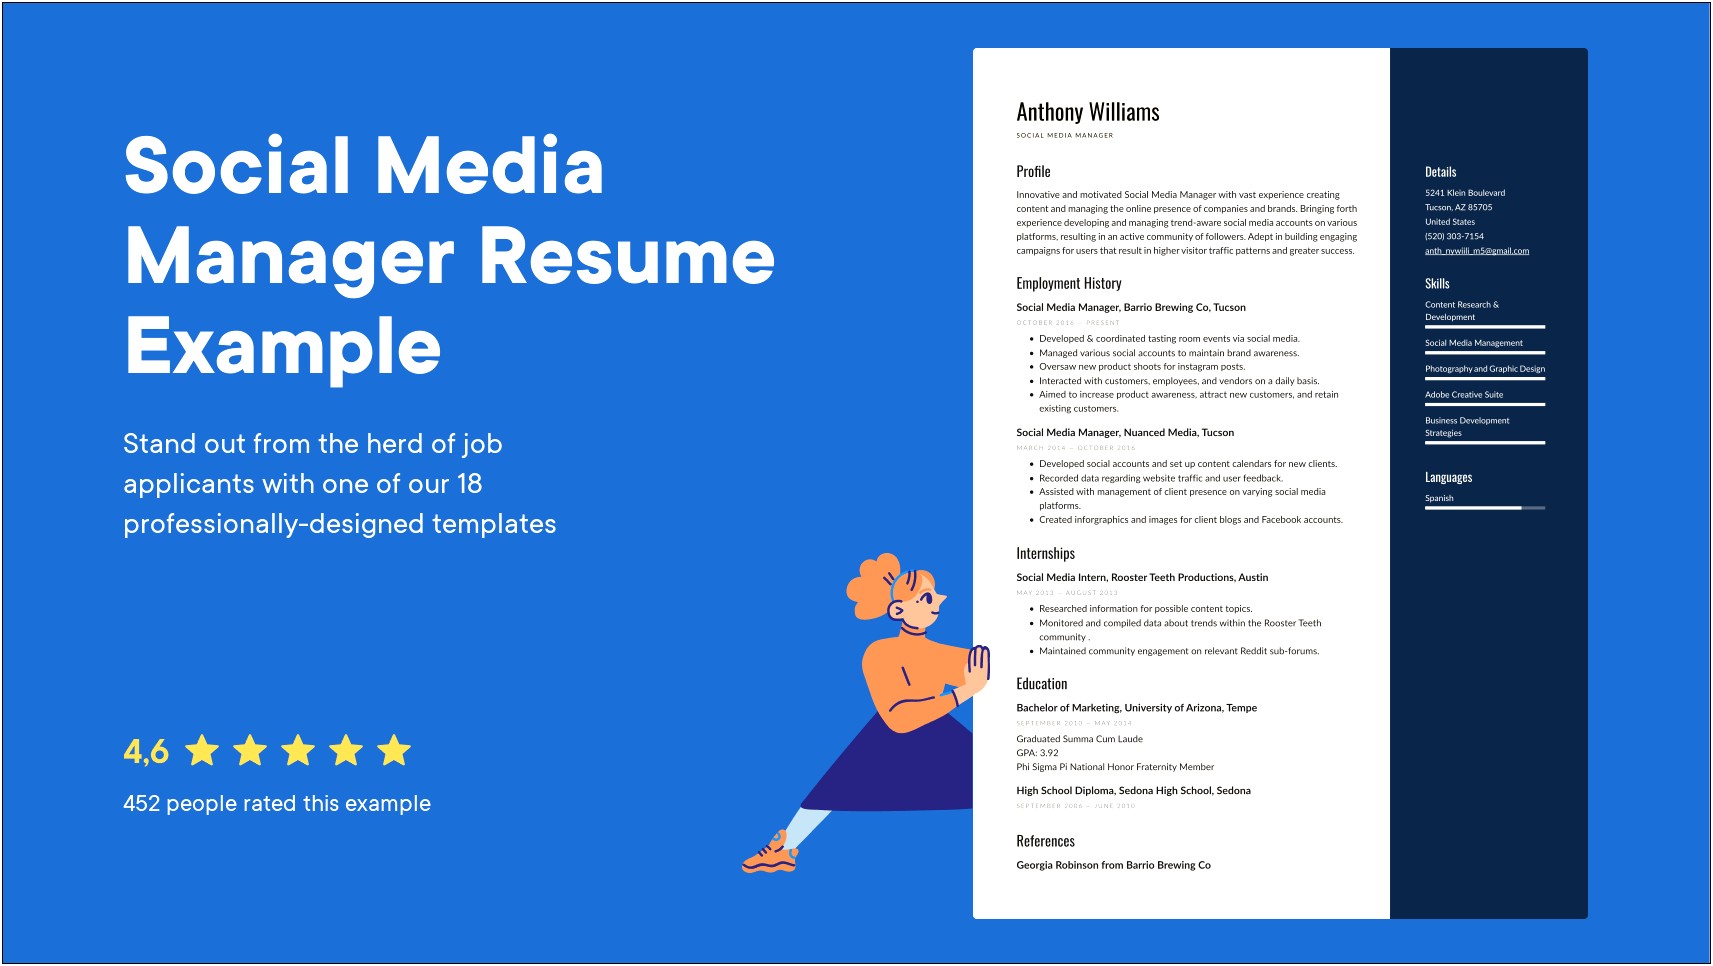 Resume Words For Social Media Jobs